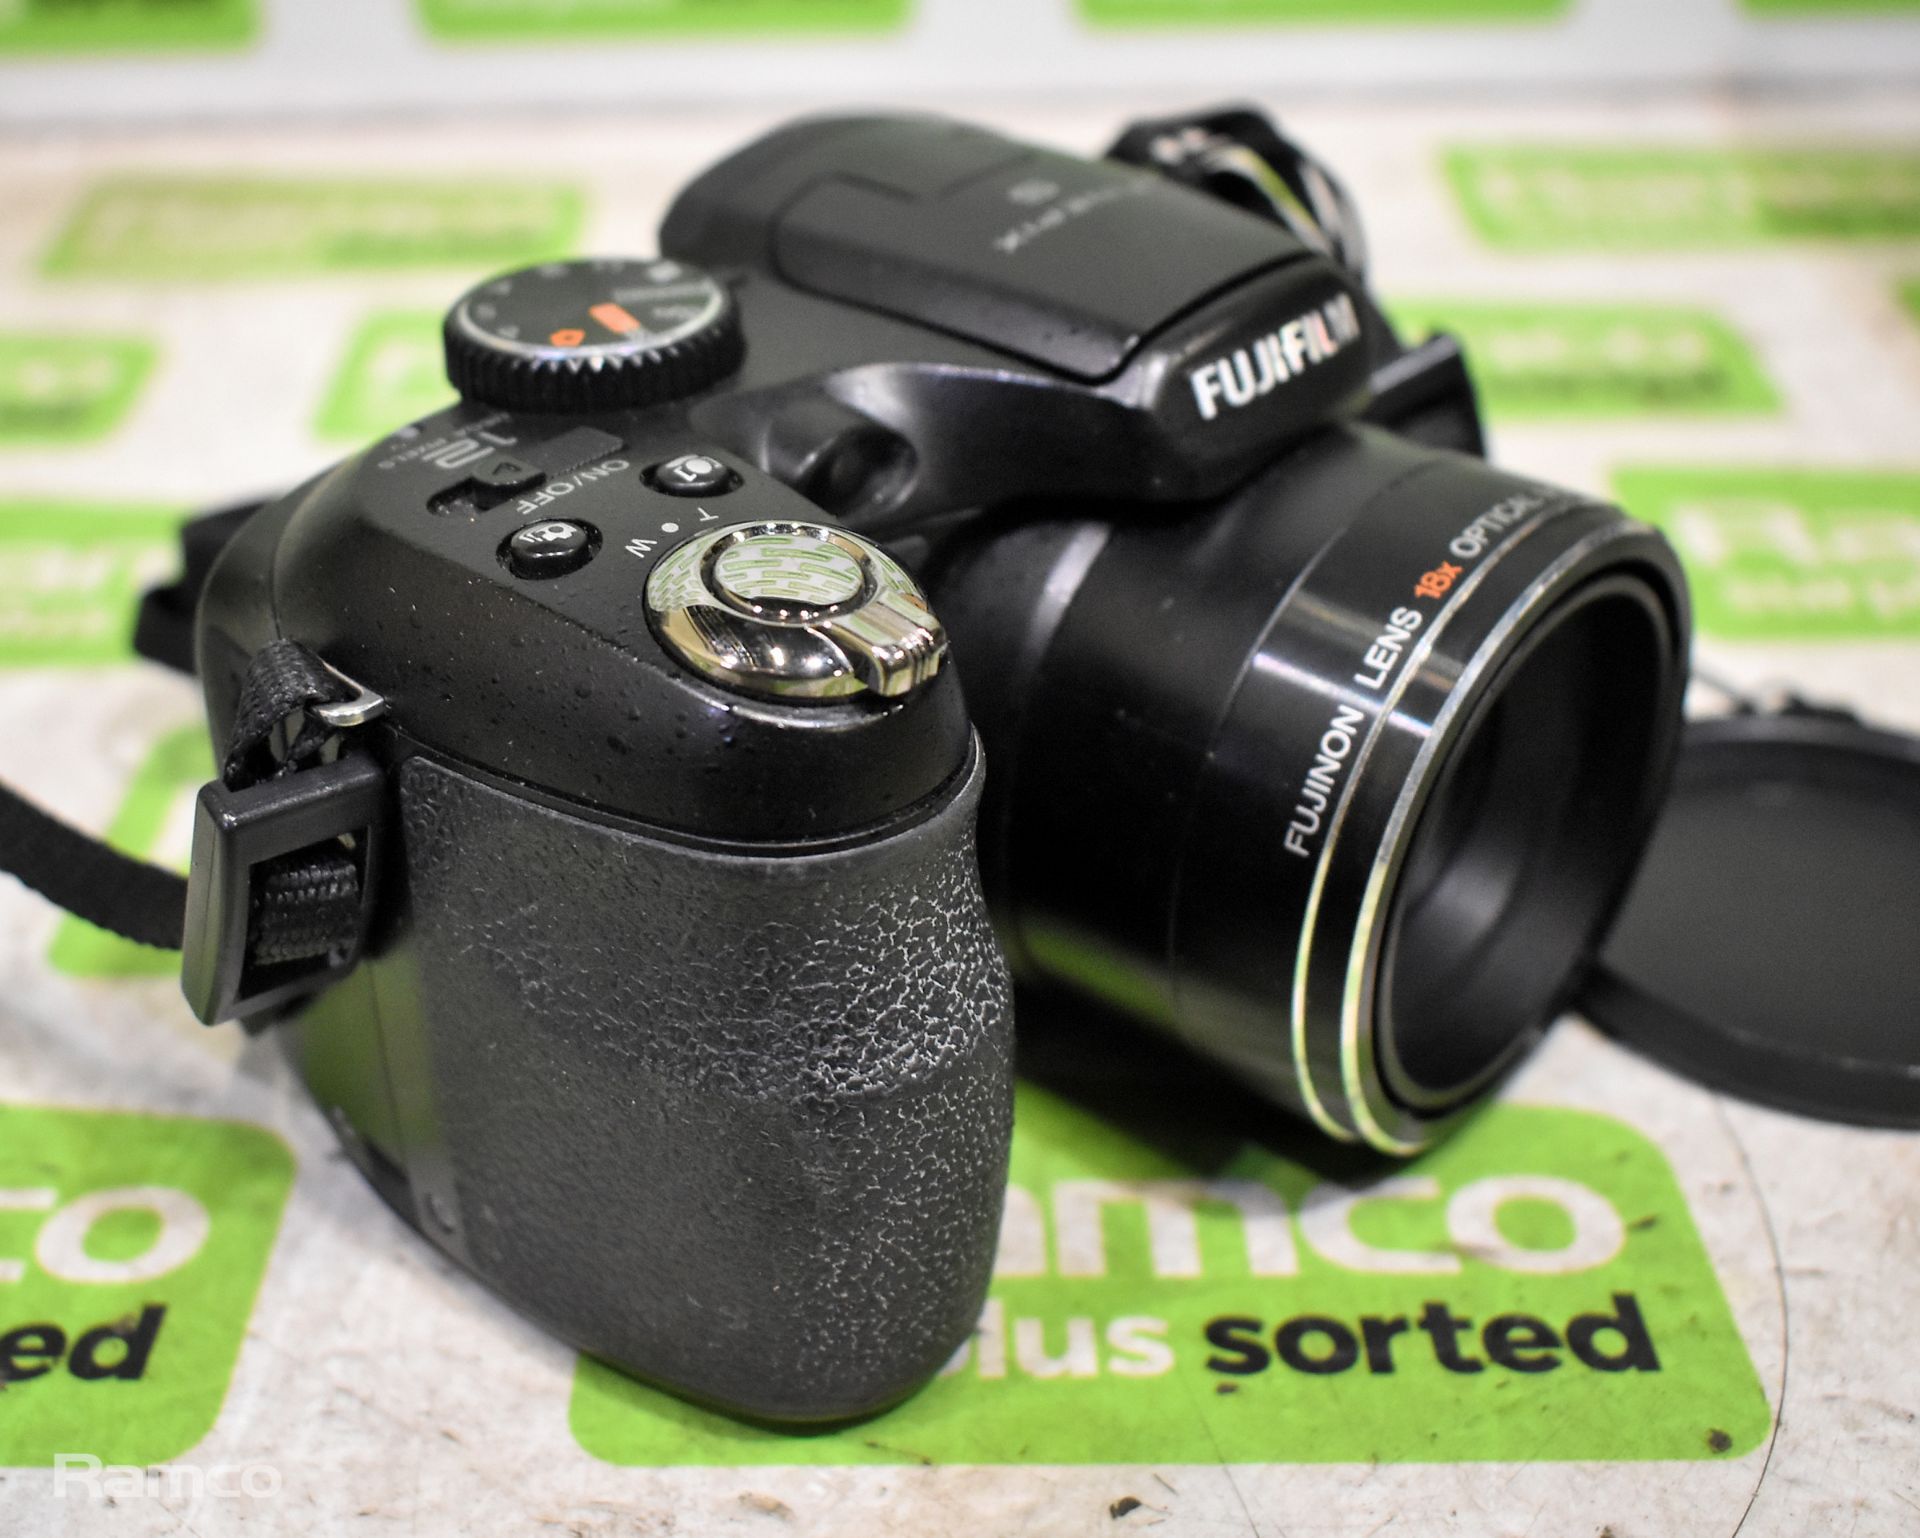 Fujifilm Finepix S2500 HD digital camera with box - Bild 3 aus 6